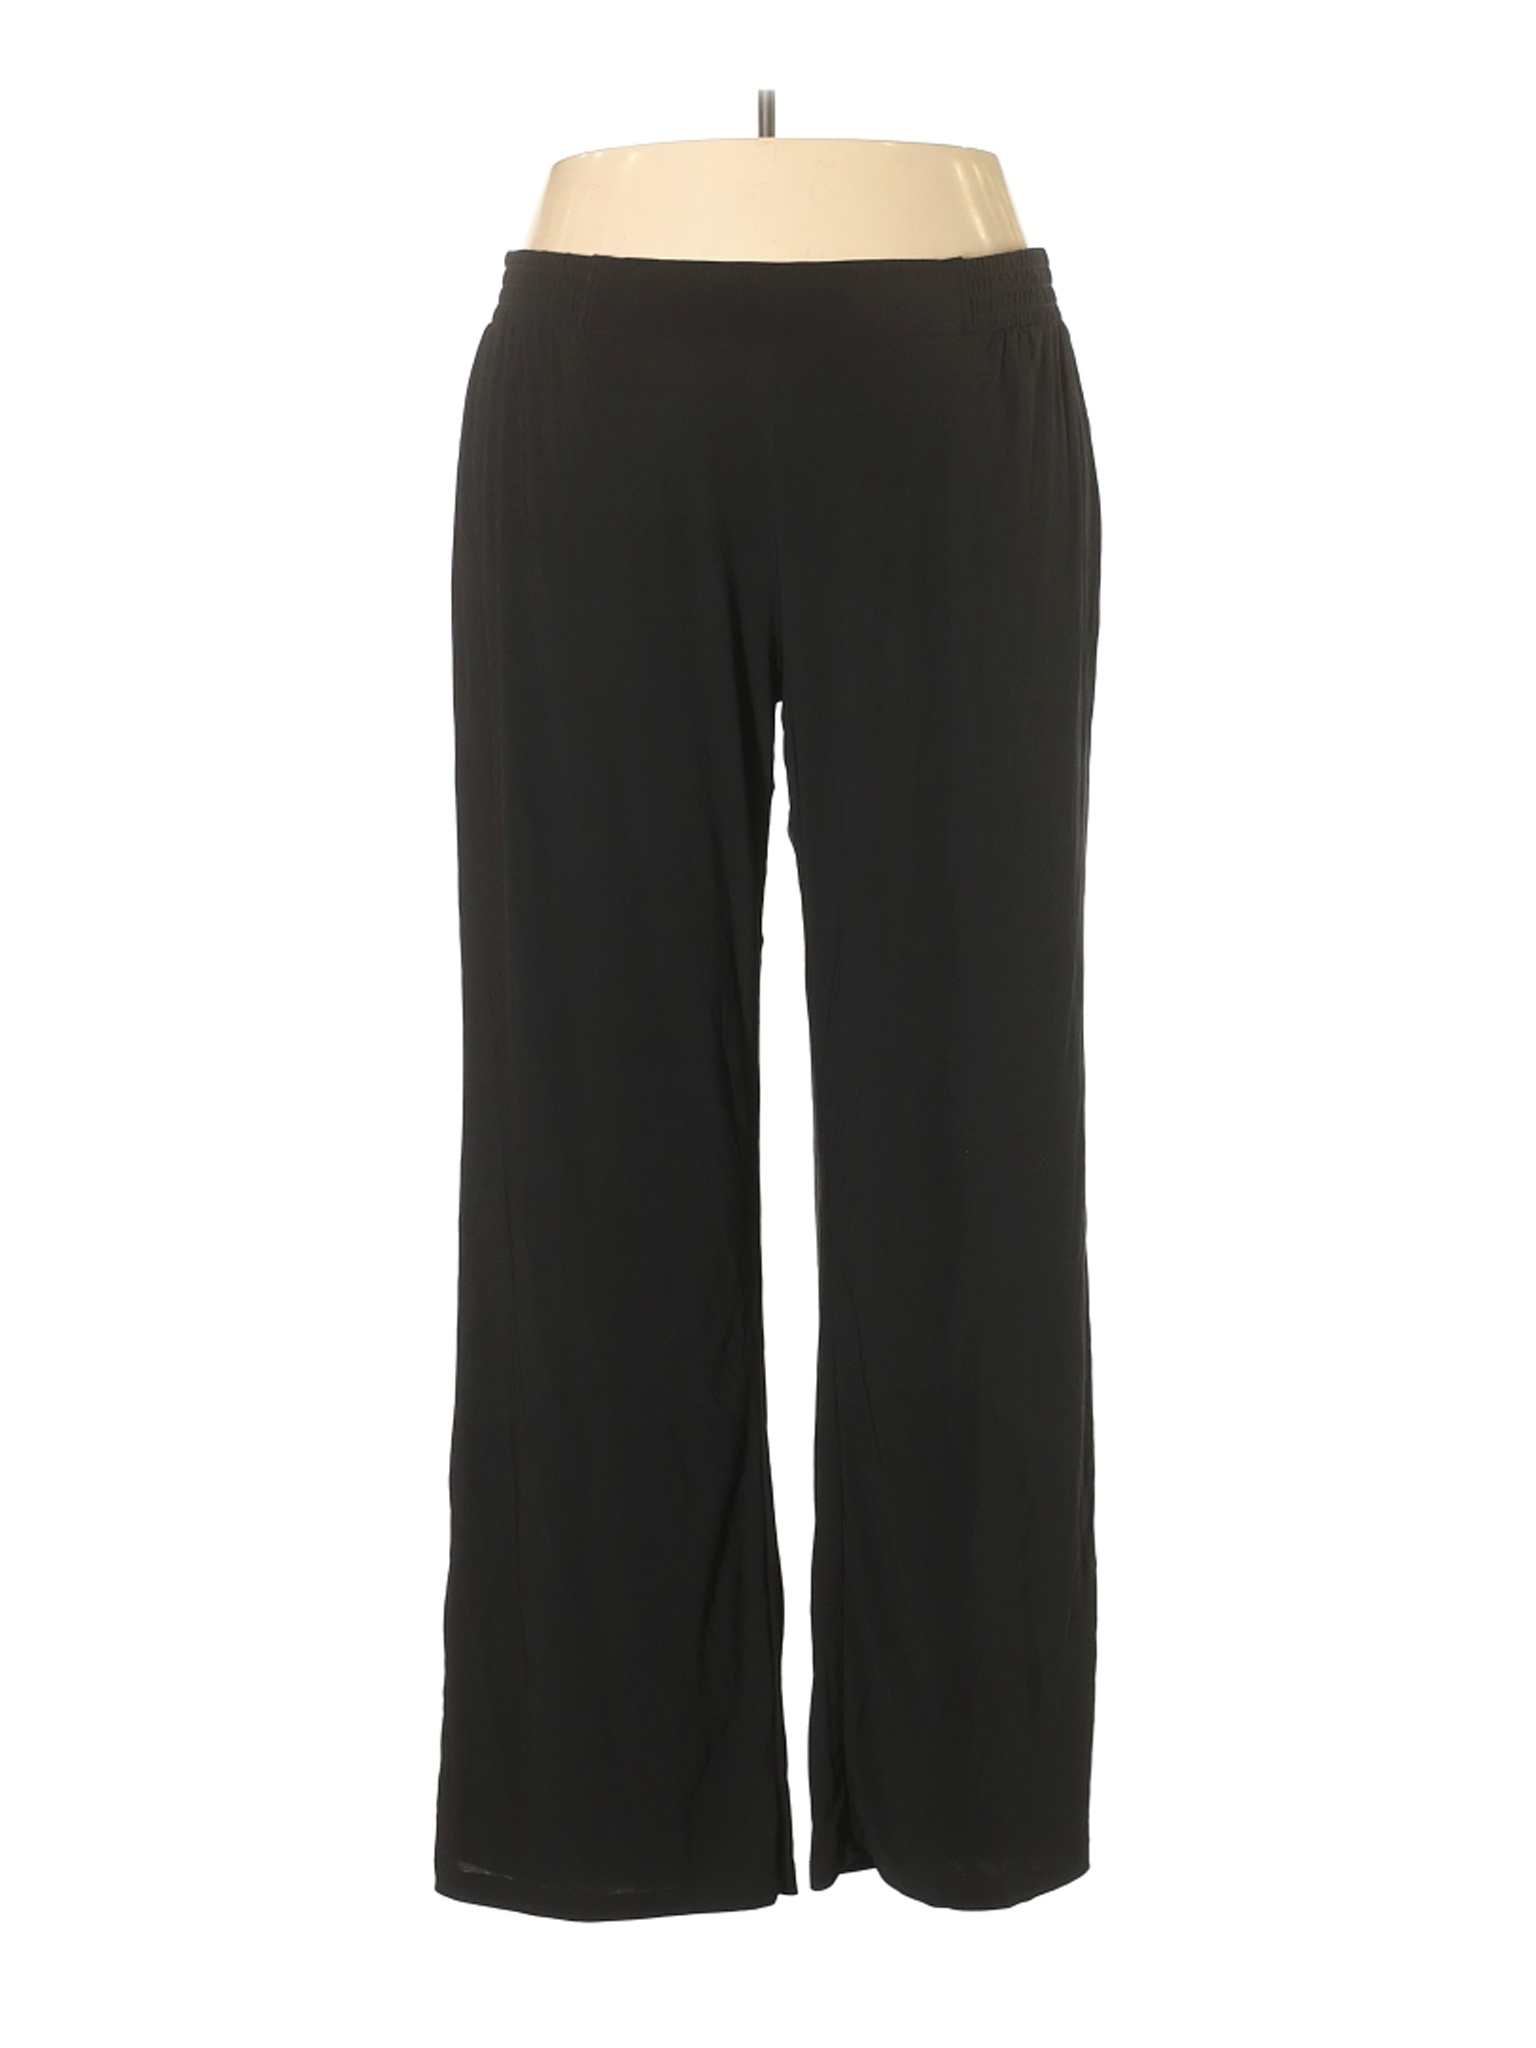 IMAN Women Black Casual Pants 3X Plus | eBay